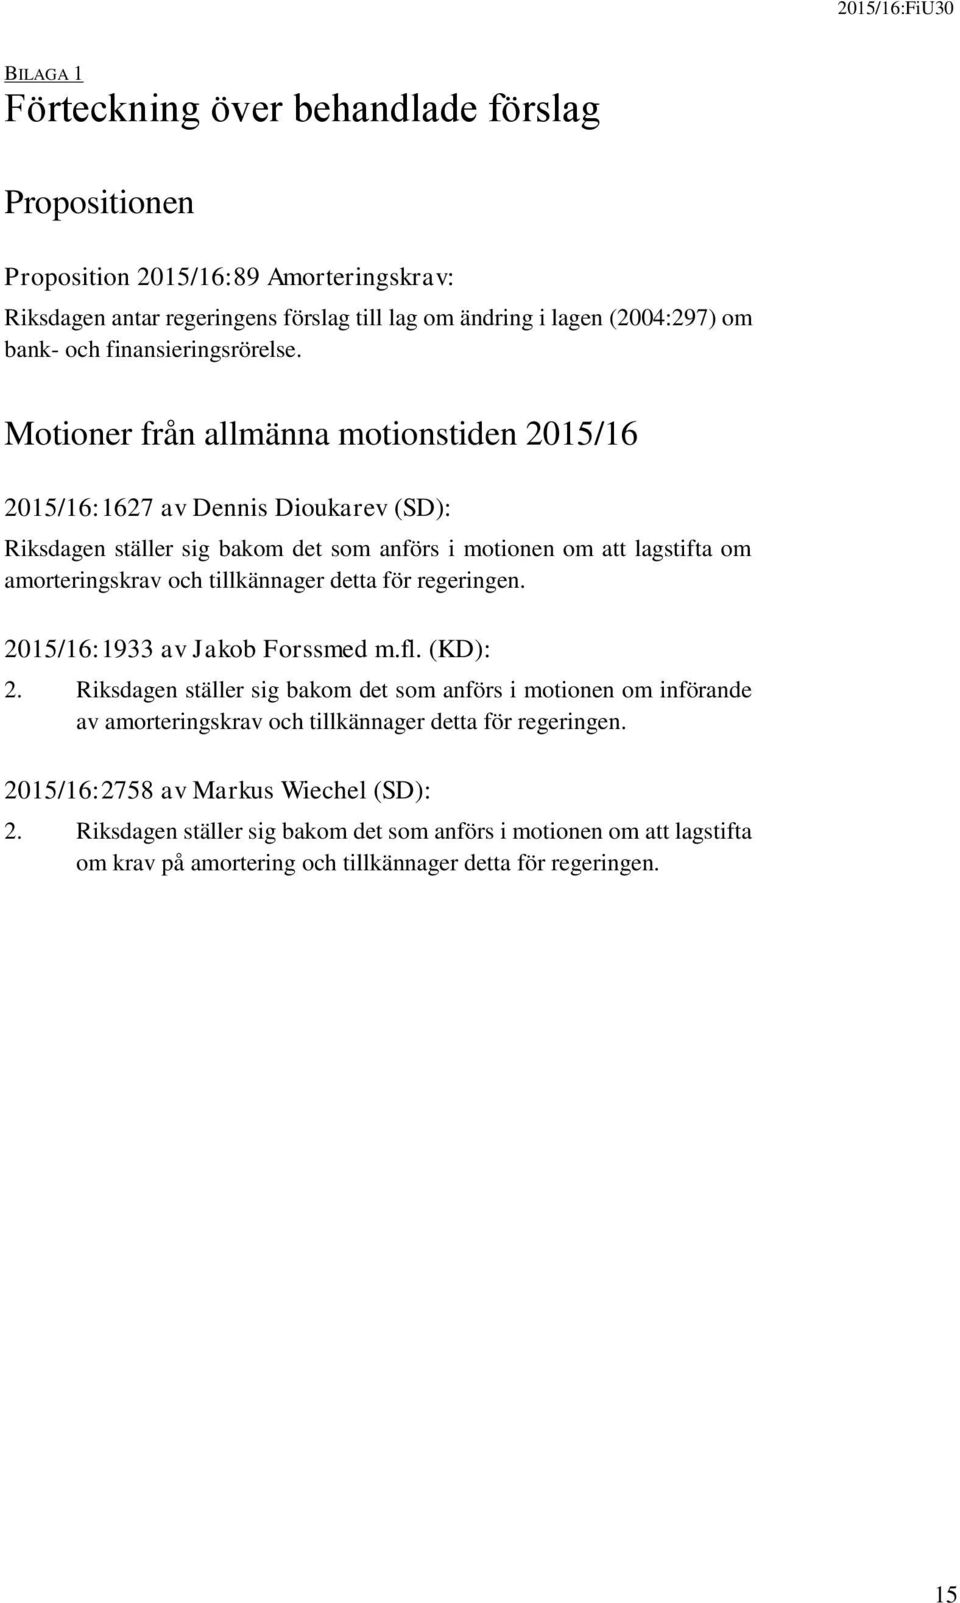 Motioner från allmänna motionstiden 2015/16 2015/16:1627 av Dennis Dioukarev (SD): Riksdagen ställer sig bakom det som anförs i motionen om att lagstifta om amorteringskrav och tillkännager